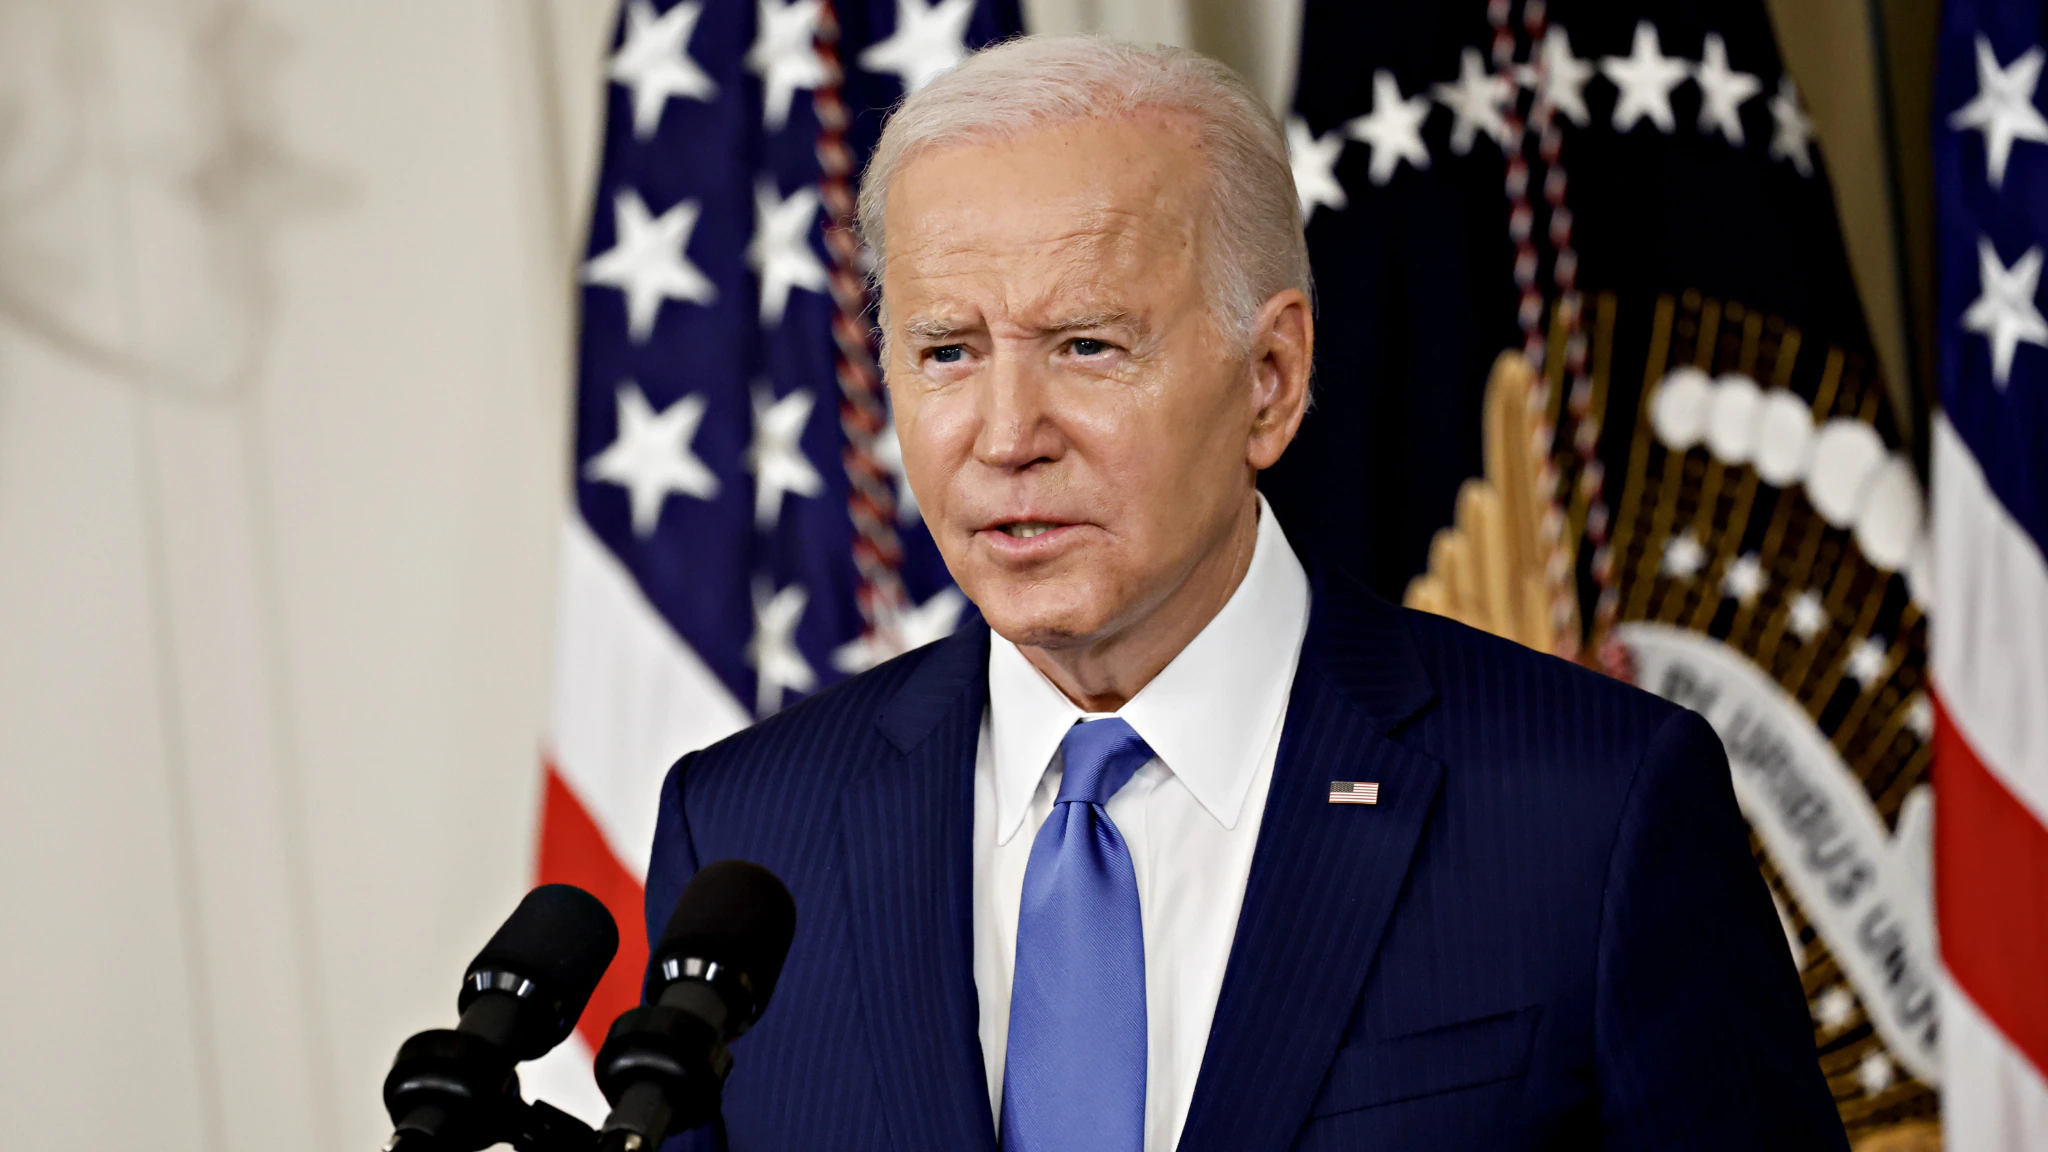 Missile sulla Polonia, Biden assolve la Russia: "Improbabile che sia stato lanciato da lì"